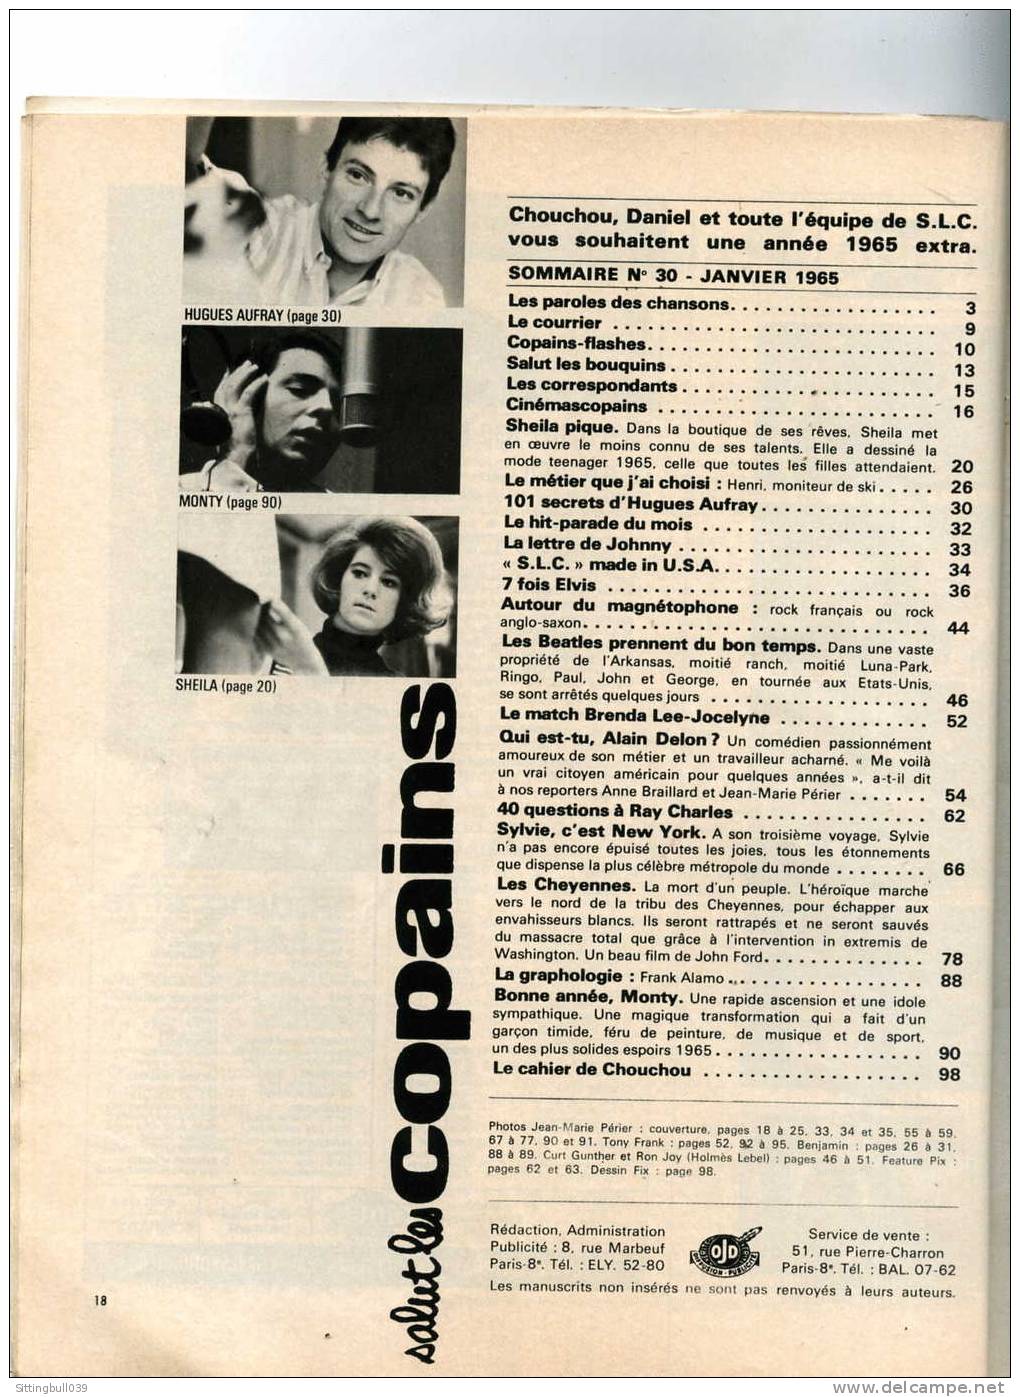 SALUT LES COPAINS N° 30 (SLC) JANV. 1965. SYLVIE VARTAN, LES BEATLES, ELVIS, ALAIN DELON, Etc. SUPERBES PHOTOS. - Musique